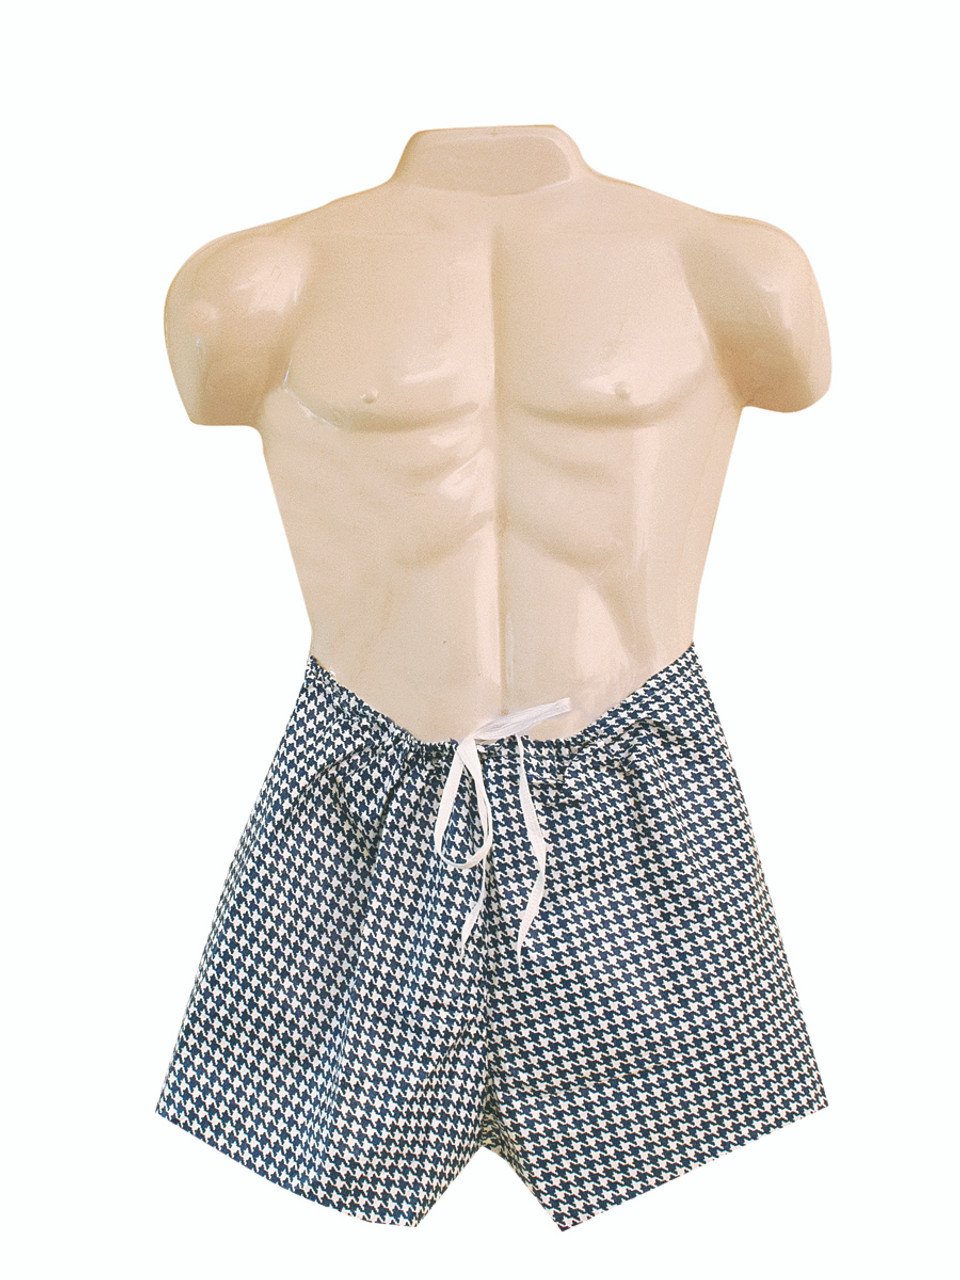 Dipsters¨ patient wear, men's tie-waist shorts, x-large - dozen